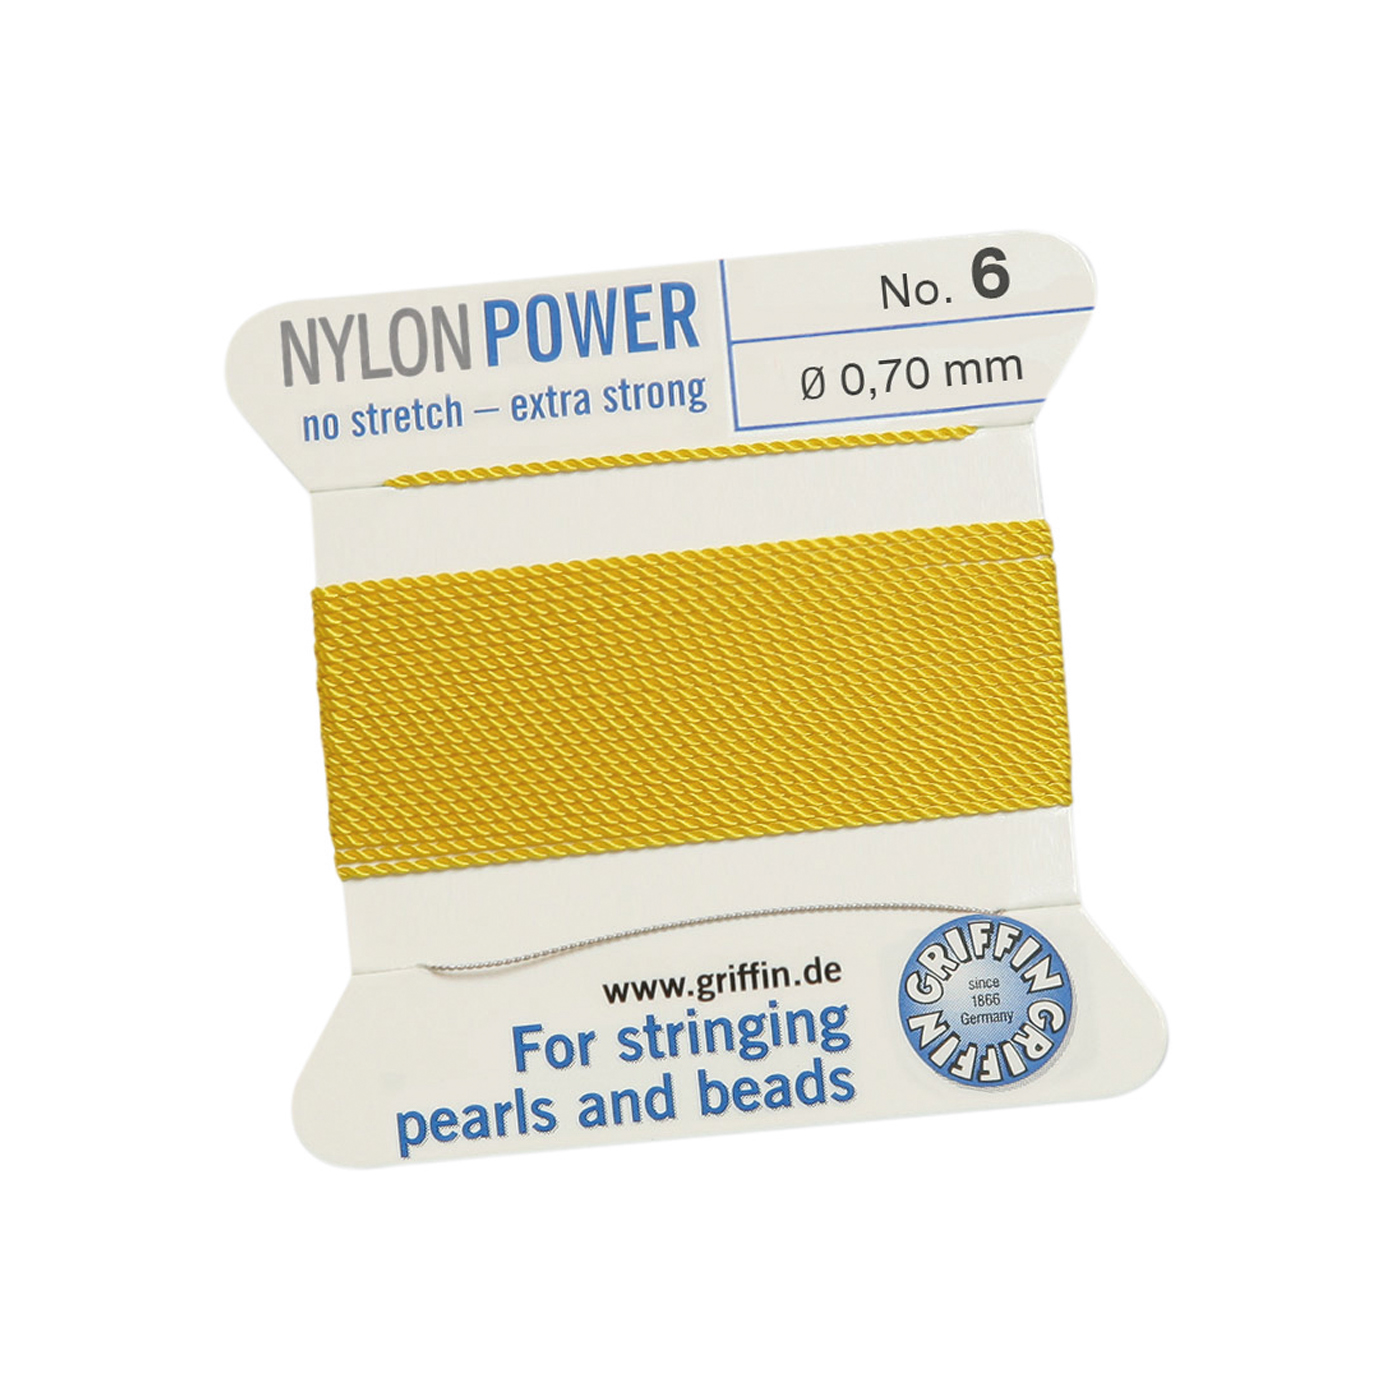 Bead Cord NylonPower, Light Yellow, No. 6 - 2 m